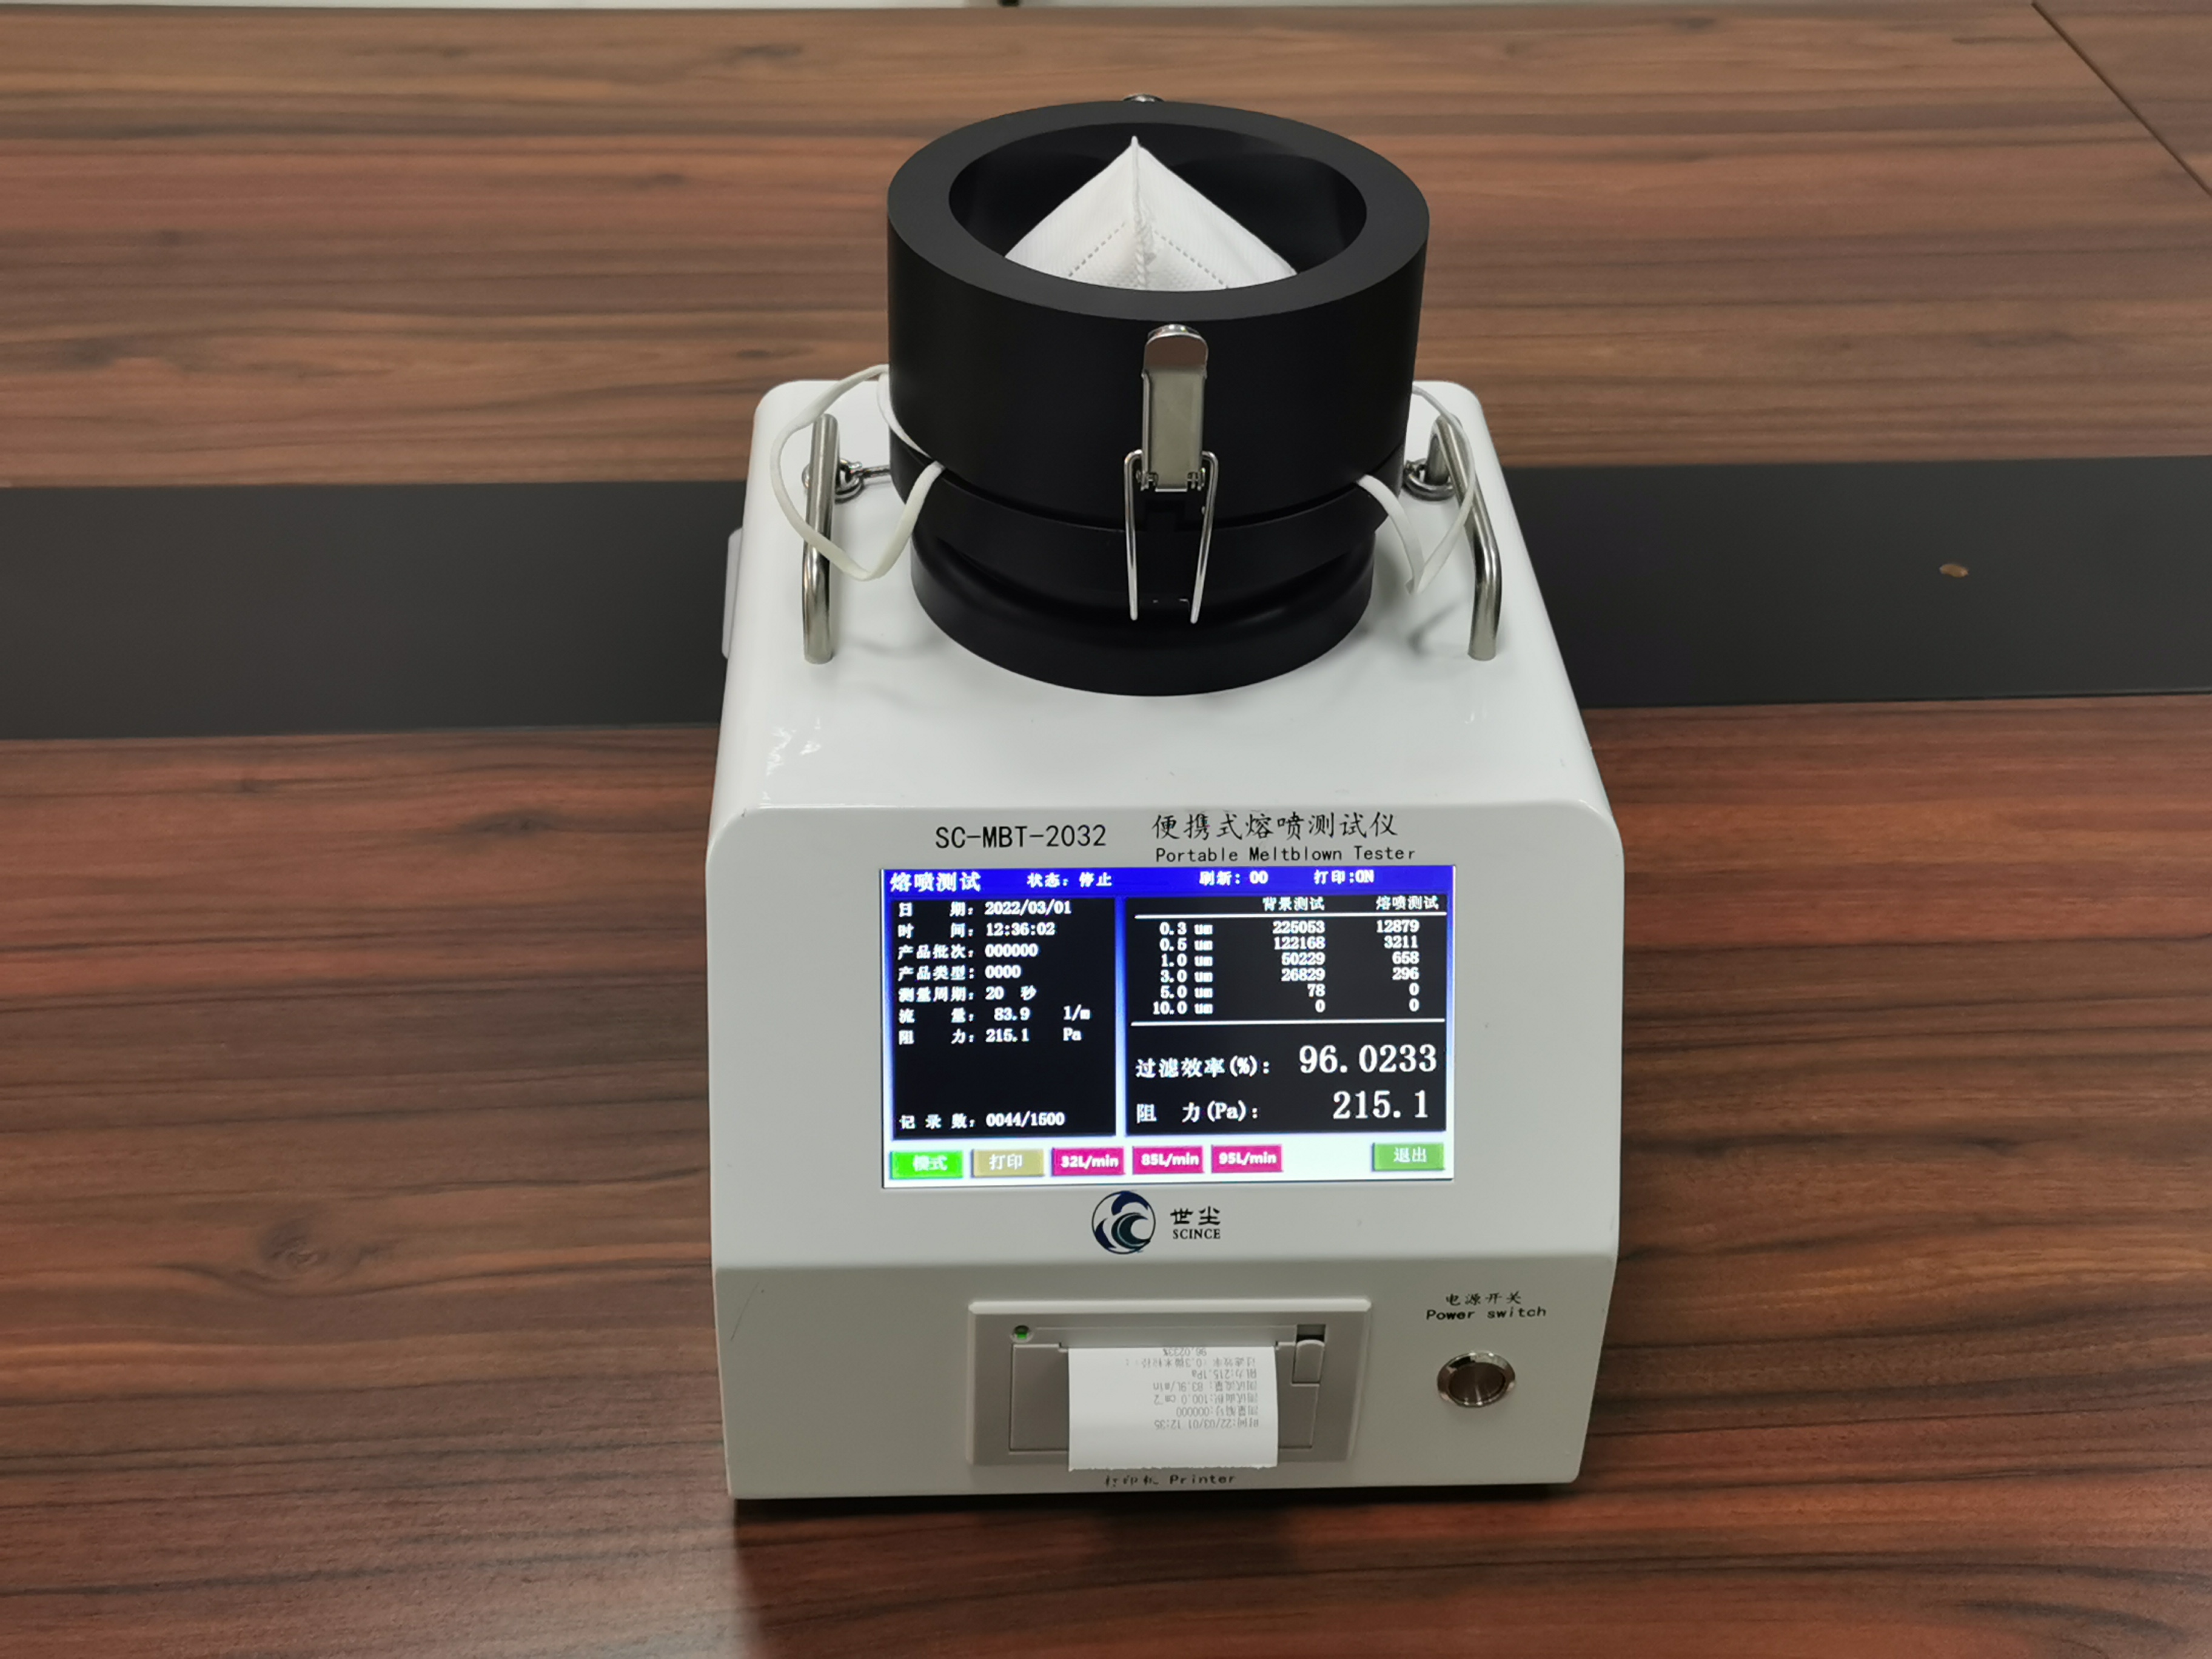 Probador de medios de filtro de equipo de prueba de material soplado en fusión portátil SC-MBT-2032